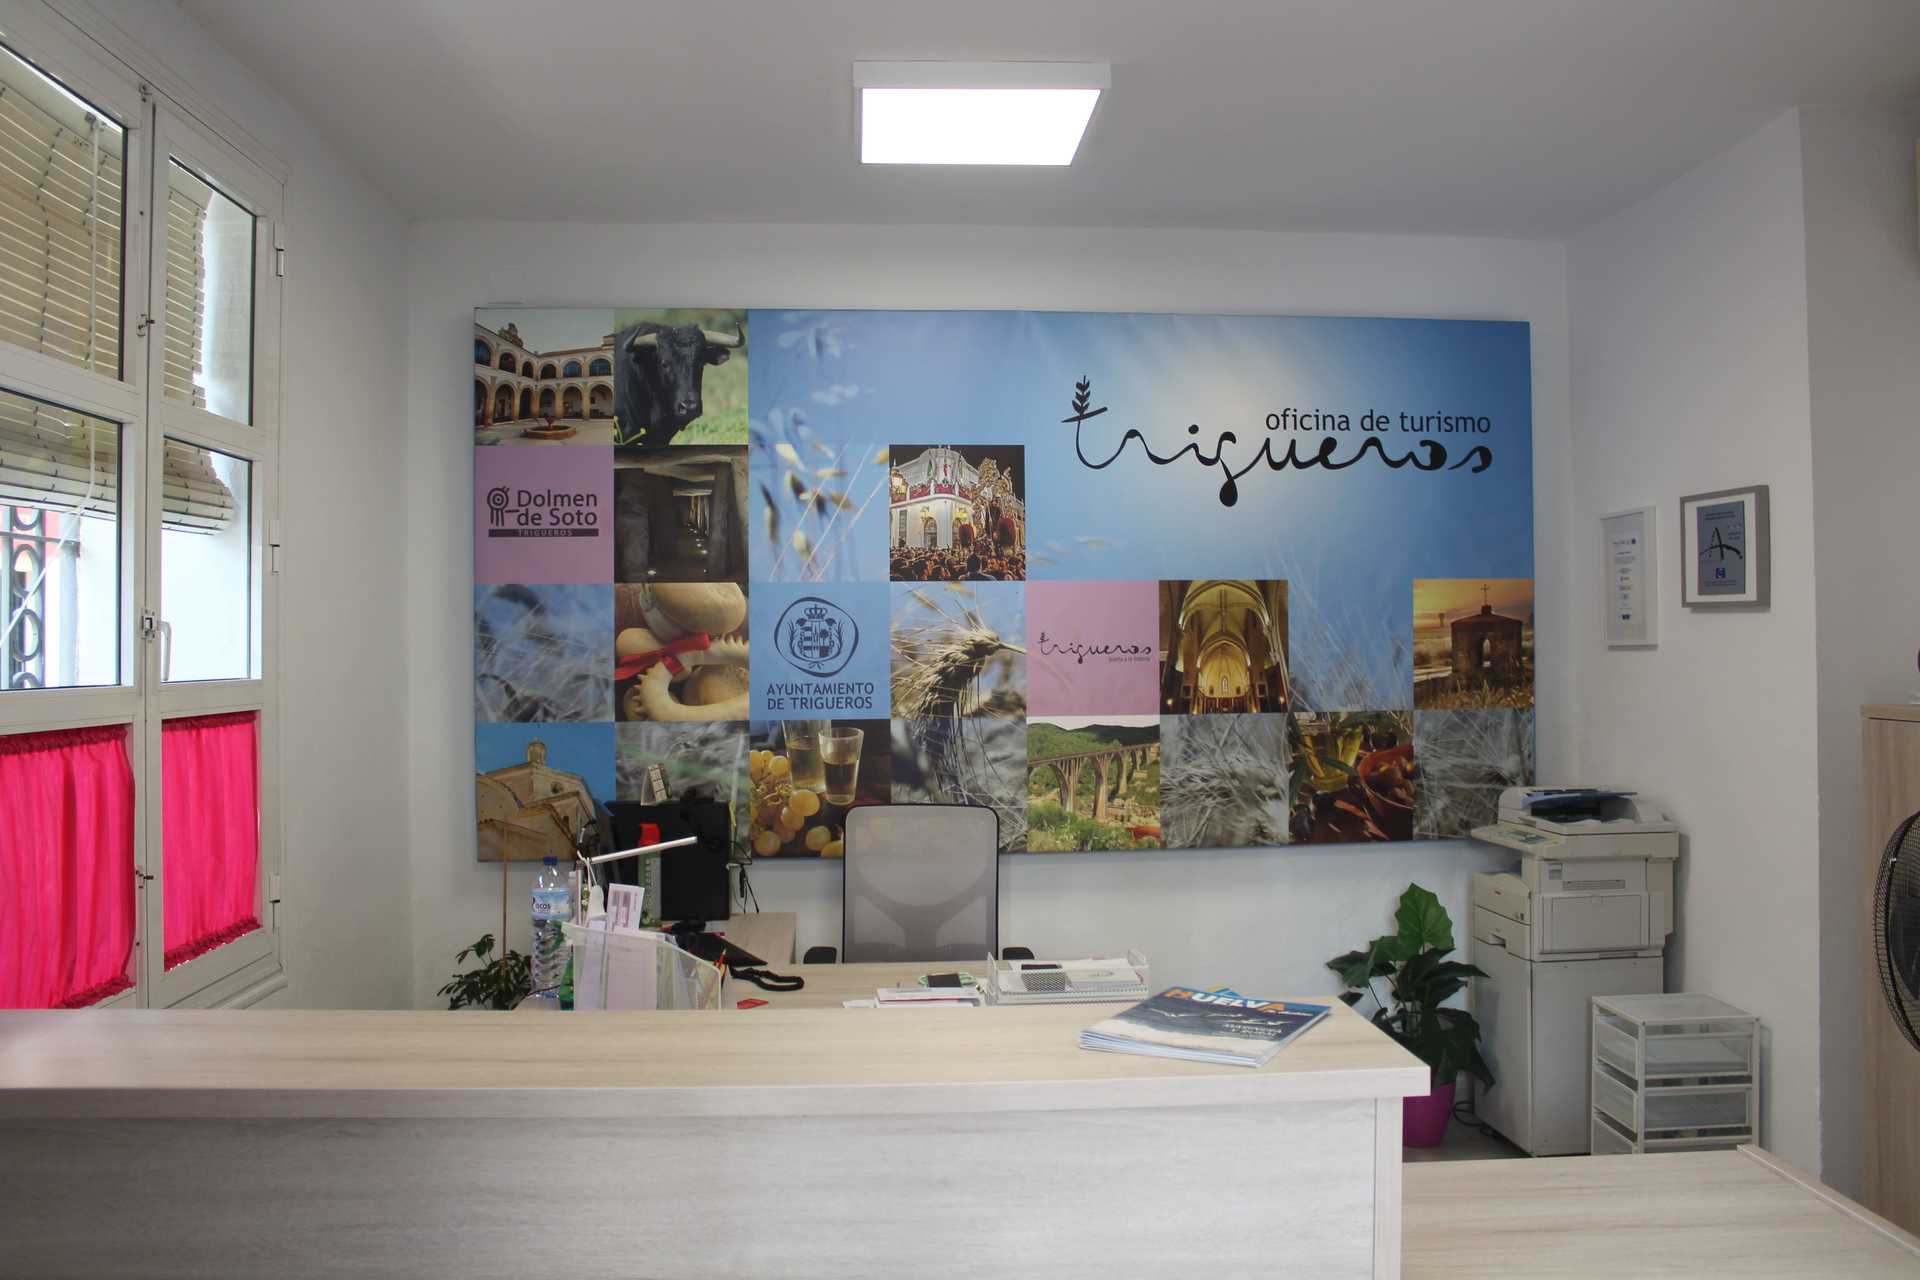 Office du Tourisme de Trigueros